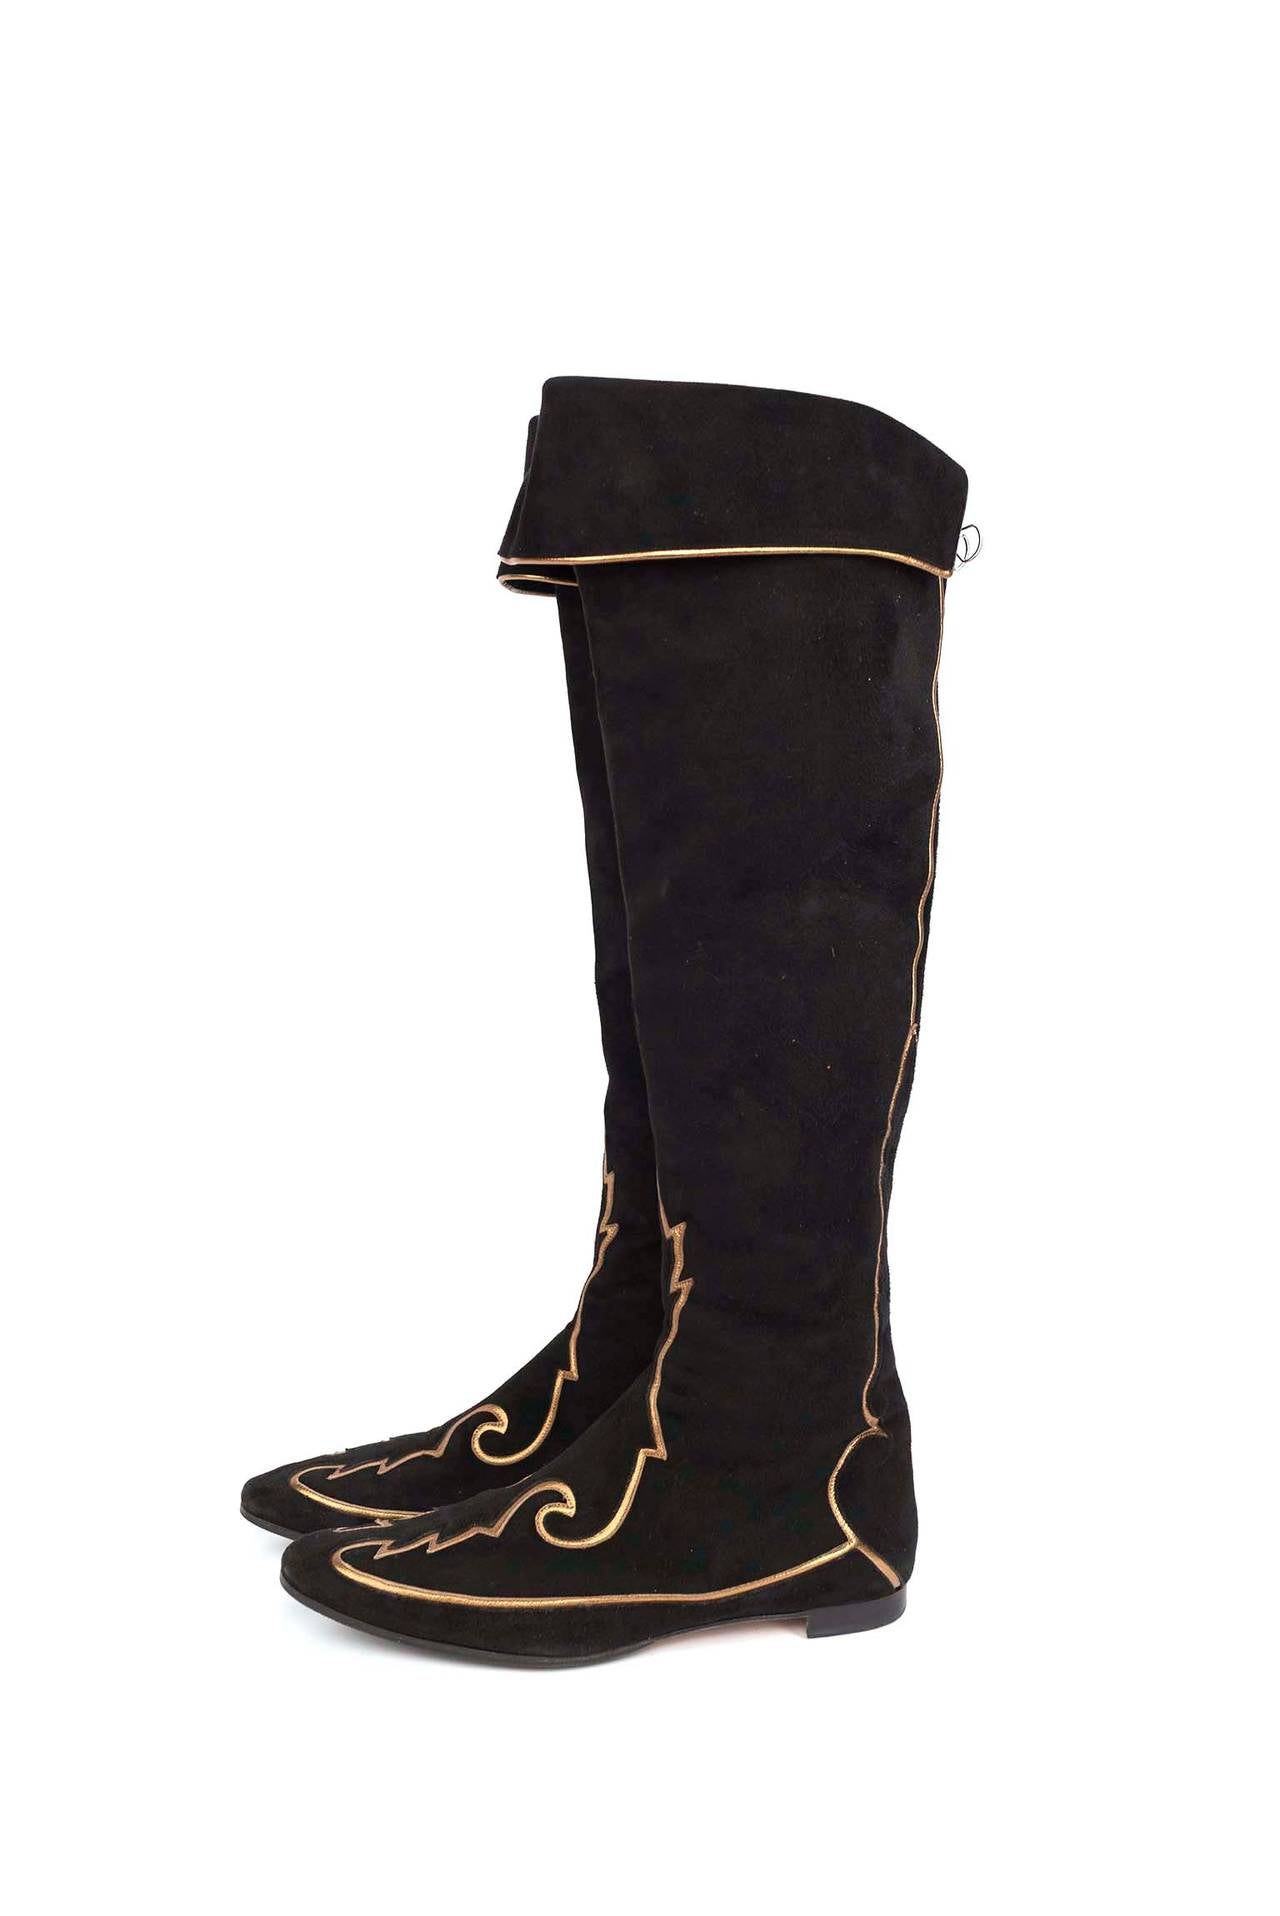 Women's Manolo Blahnik black over-knee suede boots